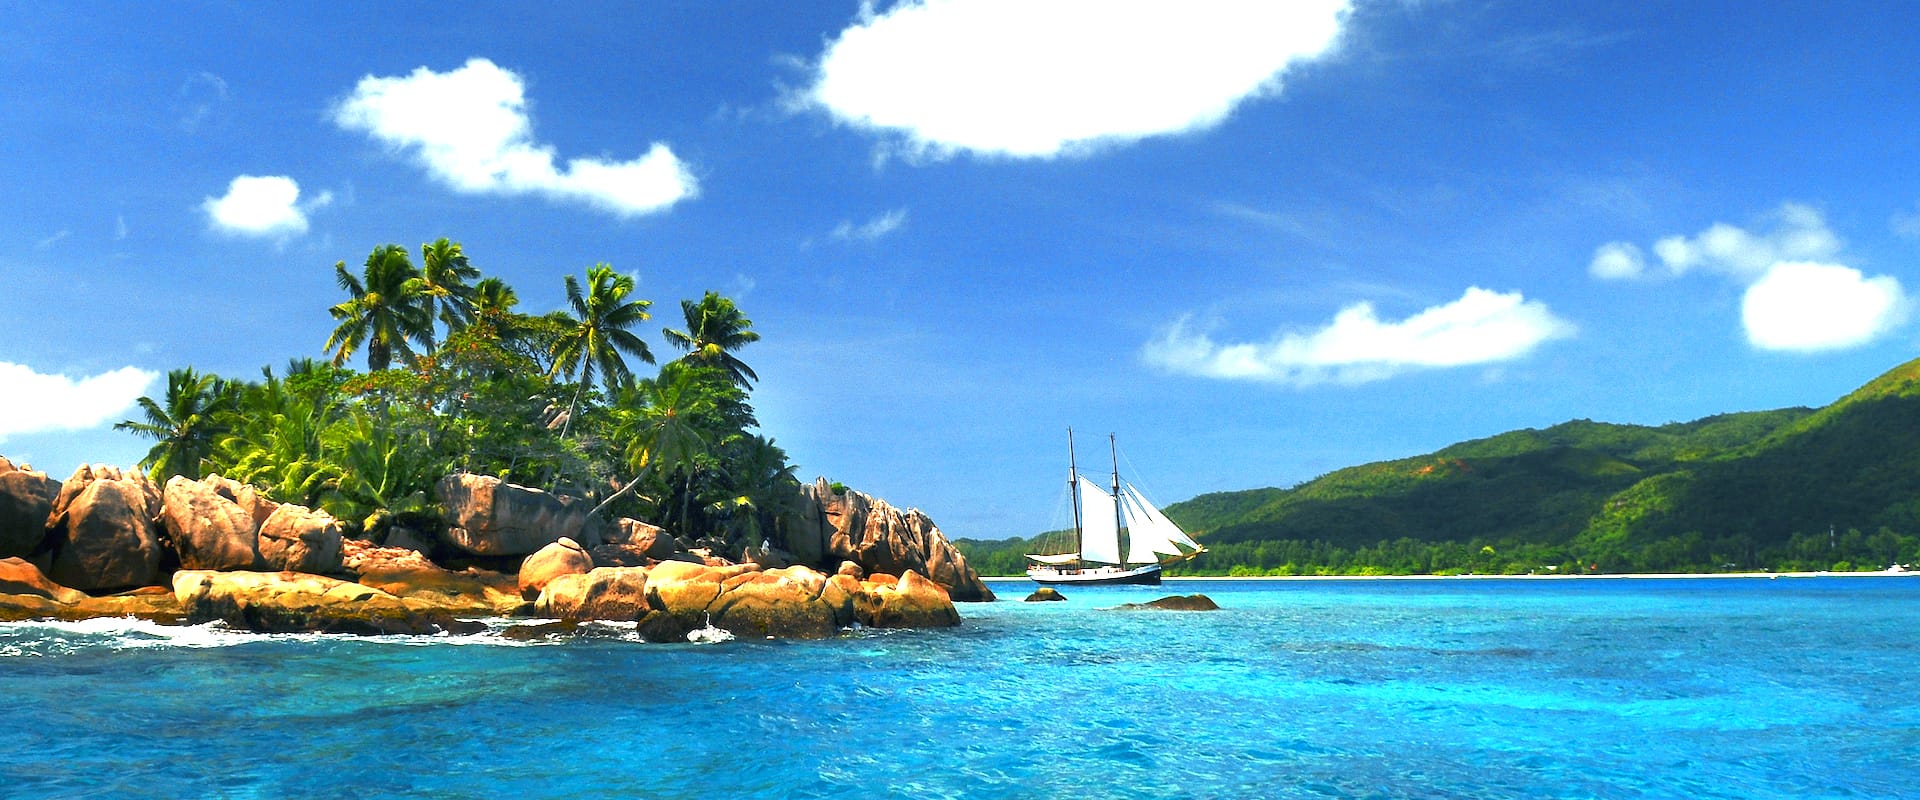 7 Croisières plongée - Seychelles - LiveAboard.com